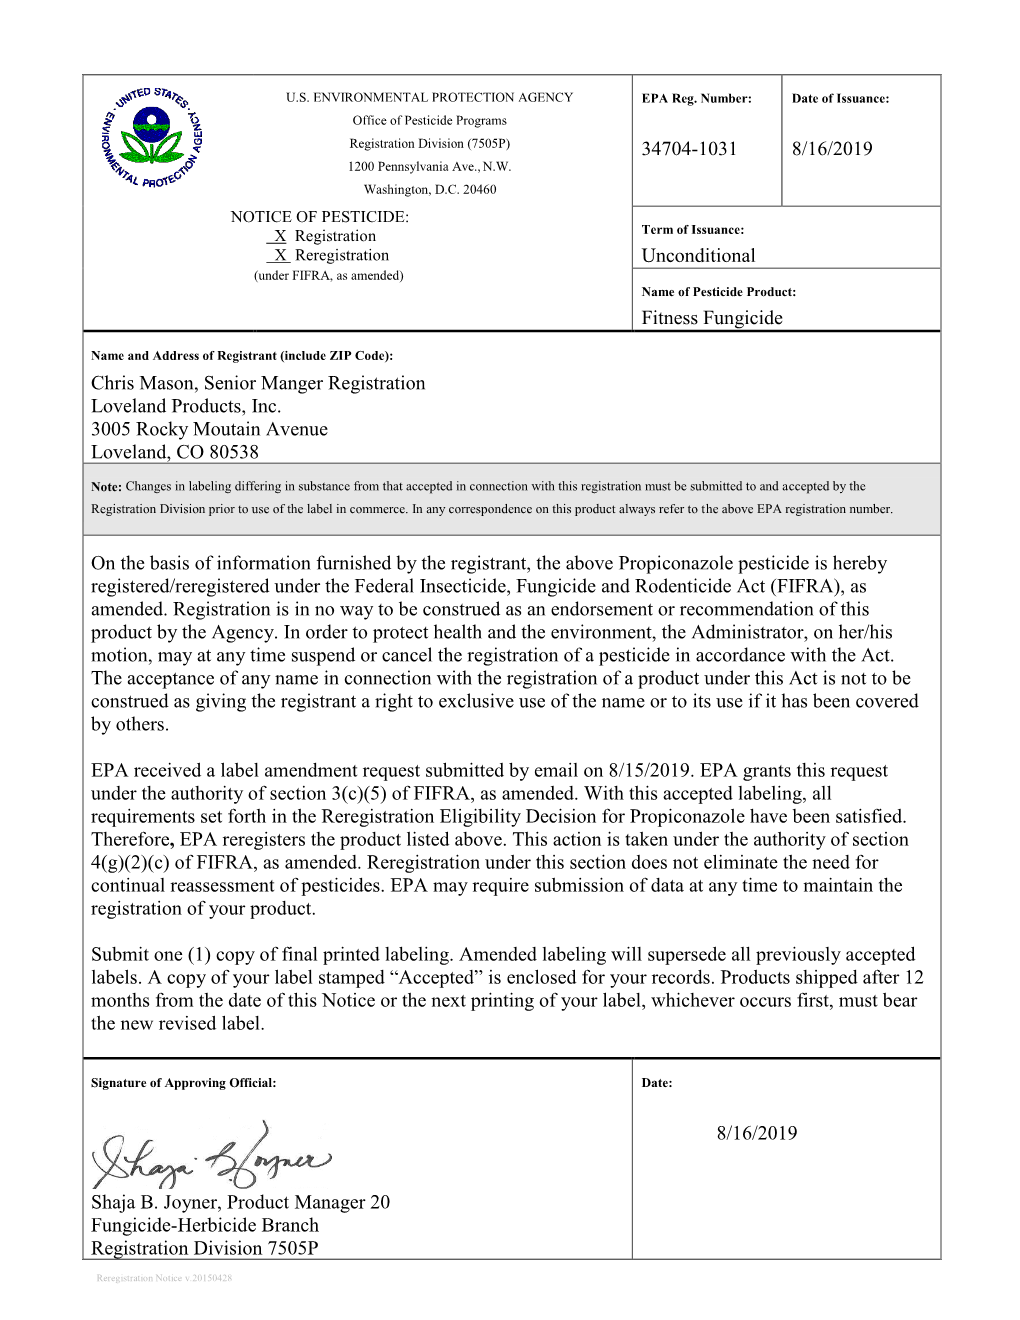 US EPA, Pesticide Product Label, FITNESS FUNGICIDE,08/16/2019